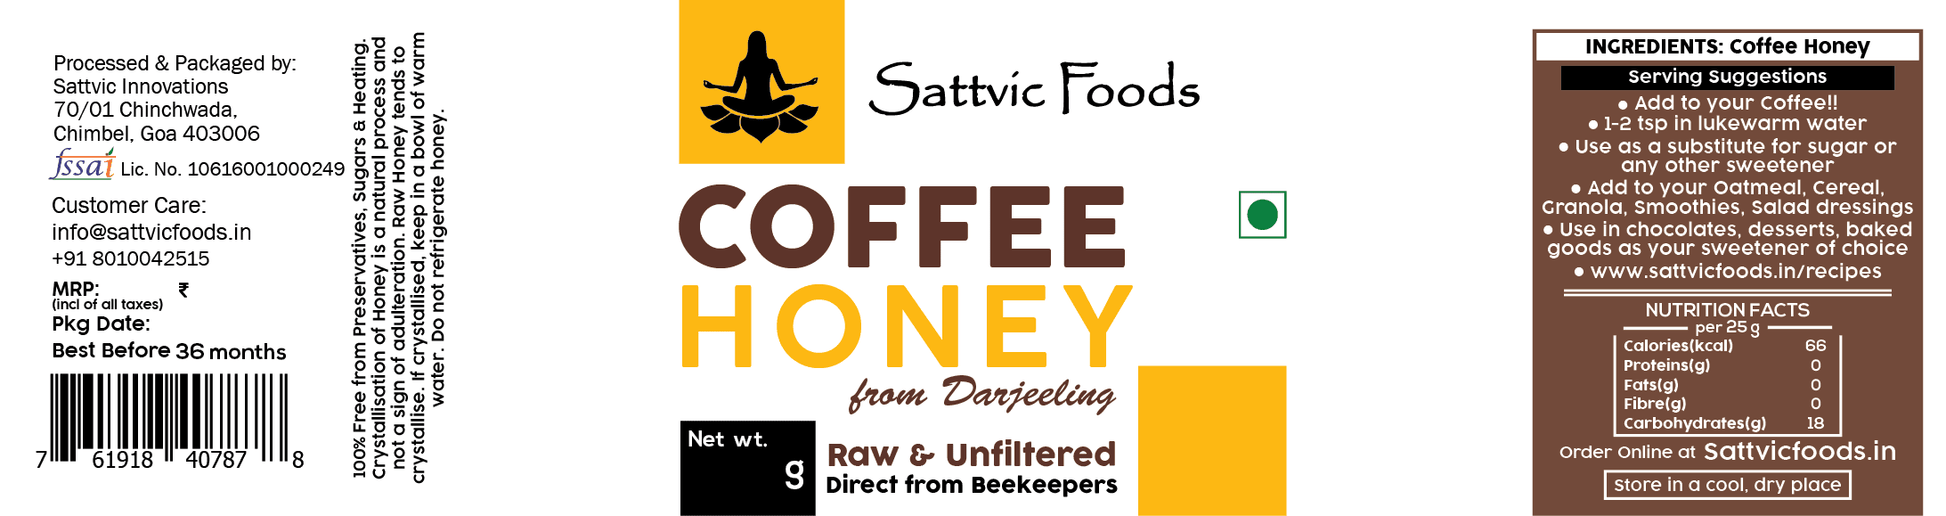 Coffee Honey - Label